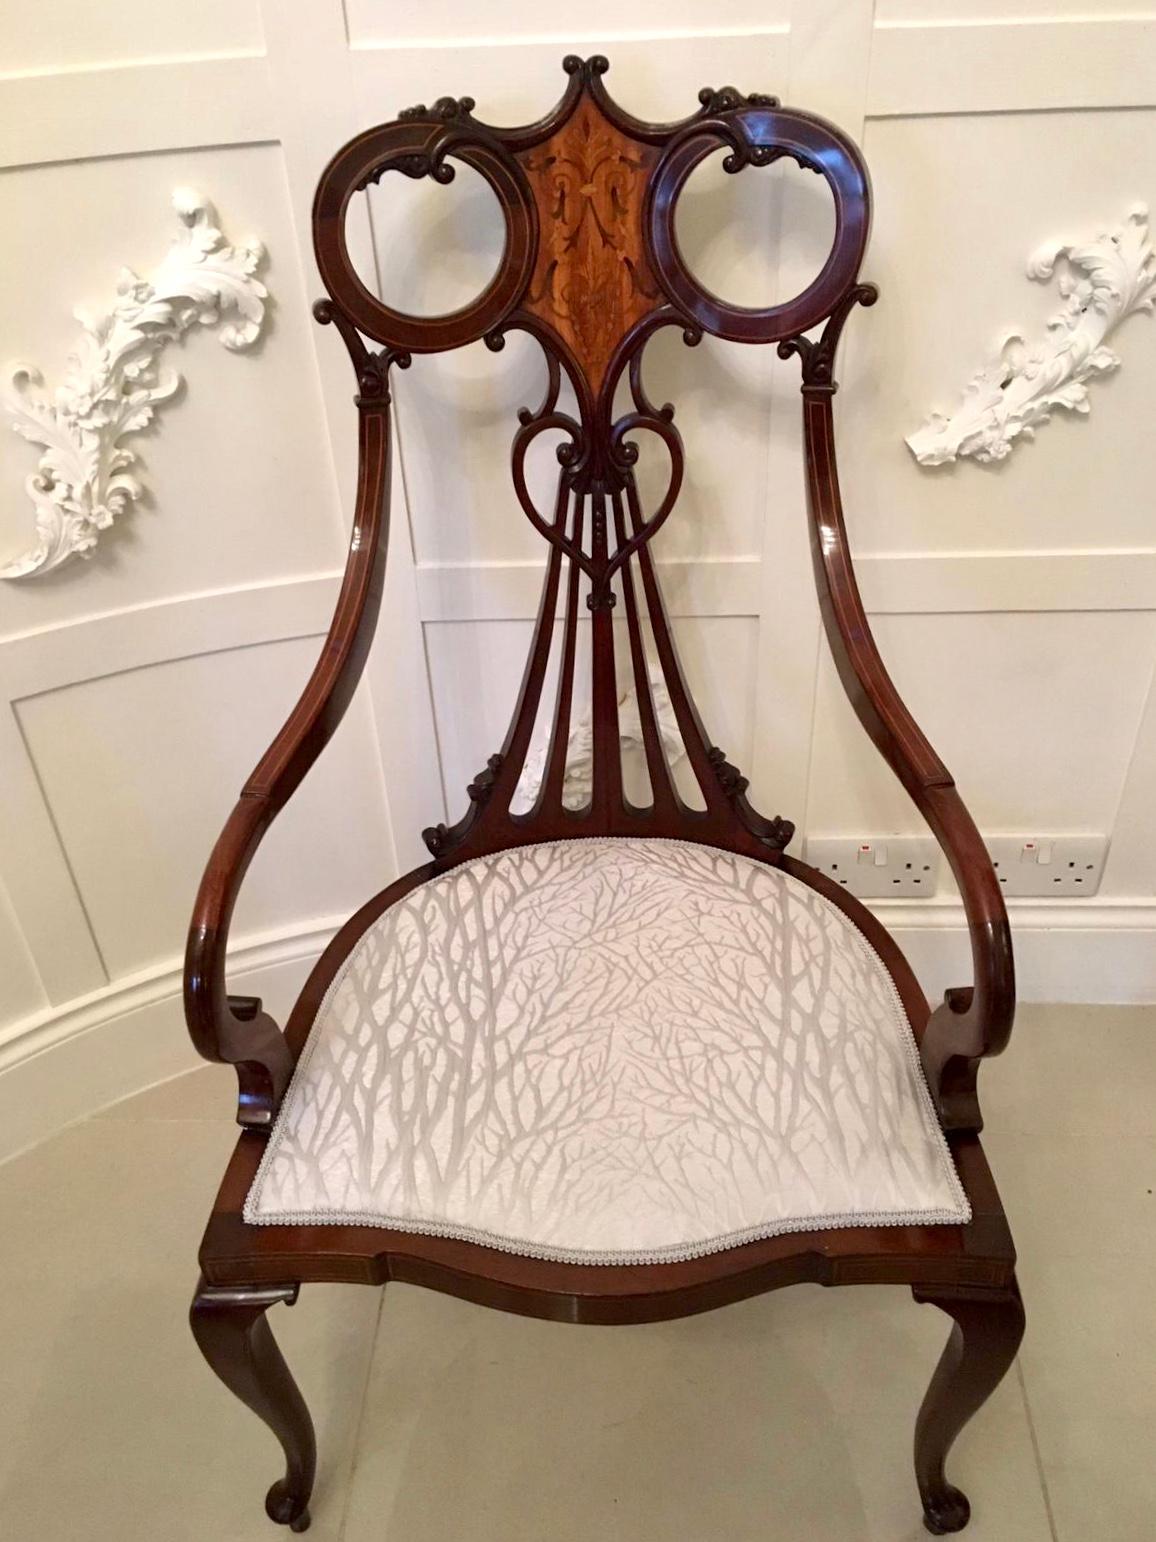 Hervorragende antike 19. Jahrhundert viktorianischen antiken Mahagoni Intarsien Sessel mit einem ungewöhnlichen schön geformte obere Schiene mit einer Qualität Satinholz eingelegt Panel. Auf der Rückseite befindet sich ein hübsches, herzförmig